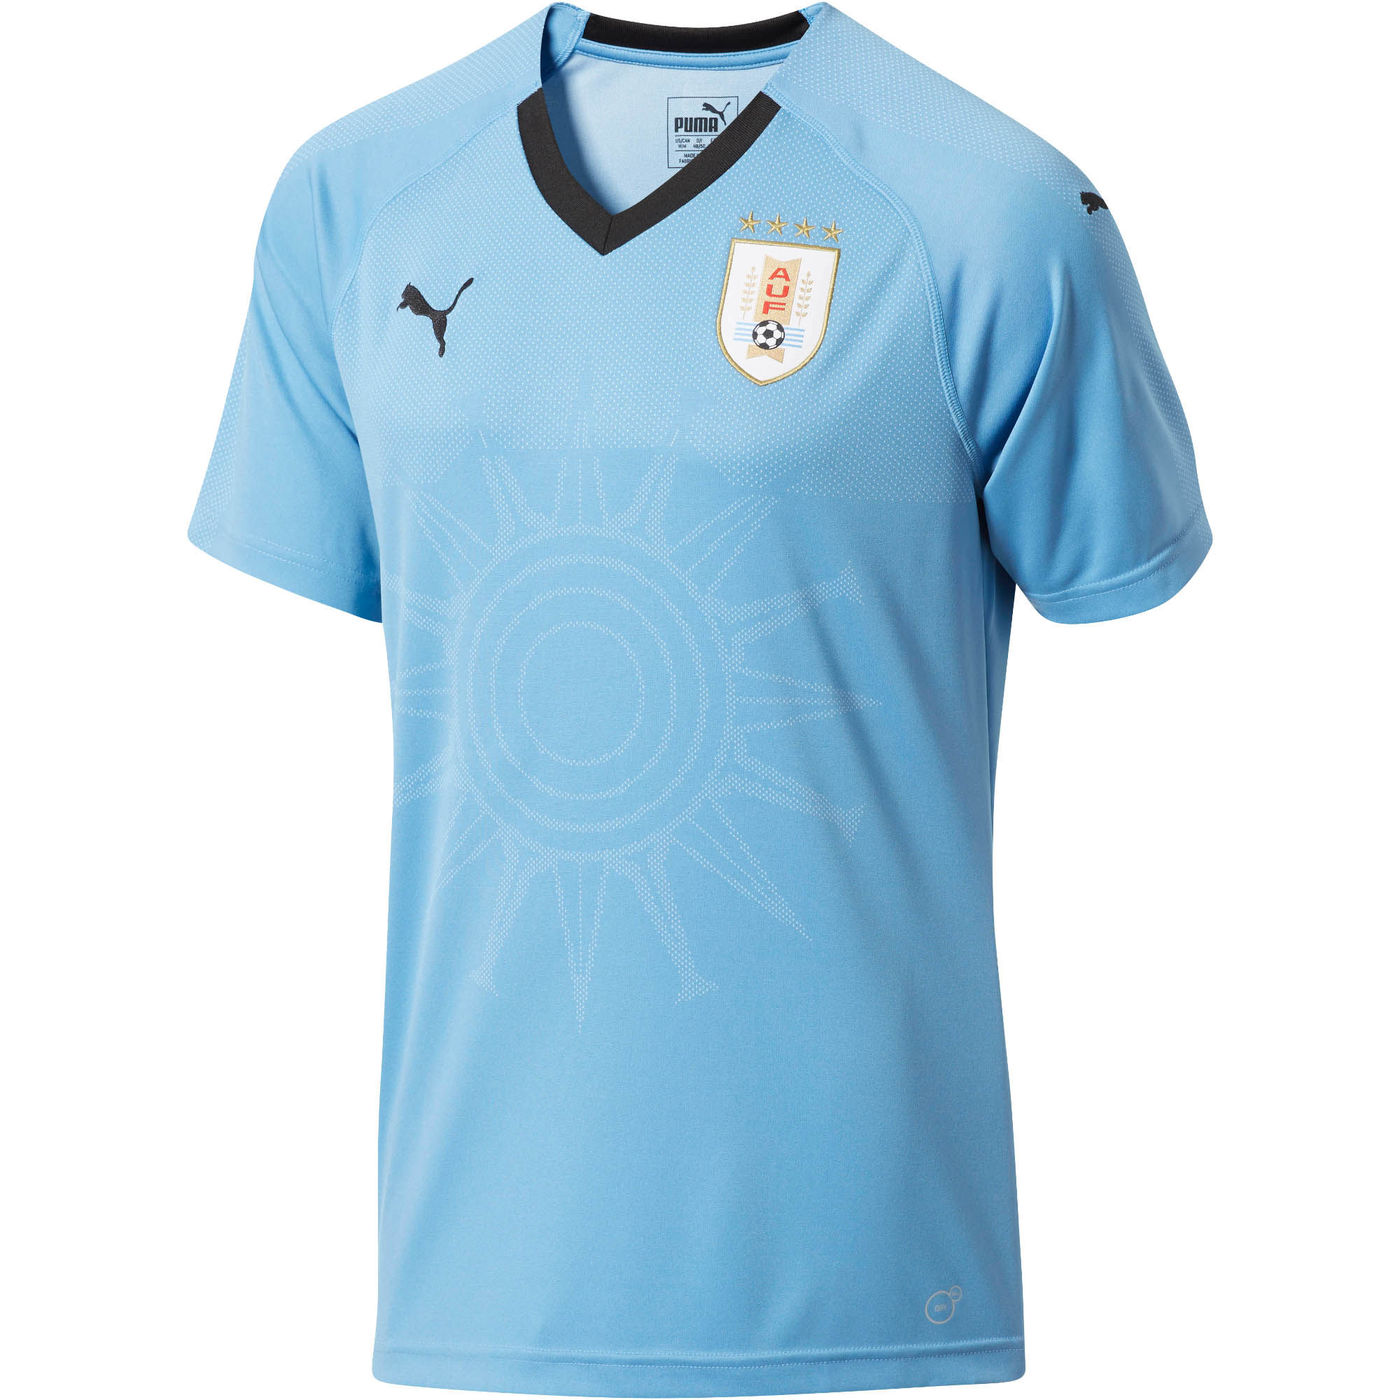 Uruguay Home Puma Football Shirt 